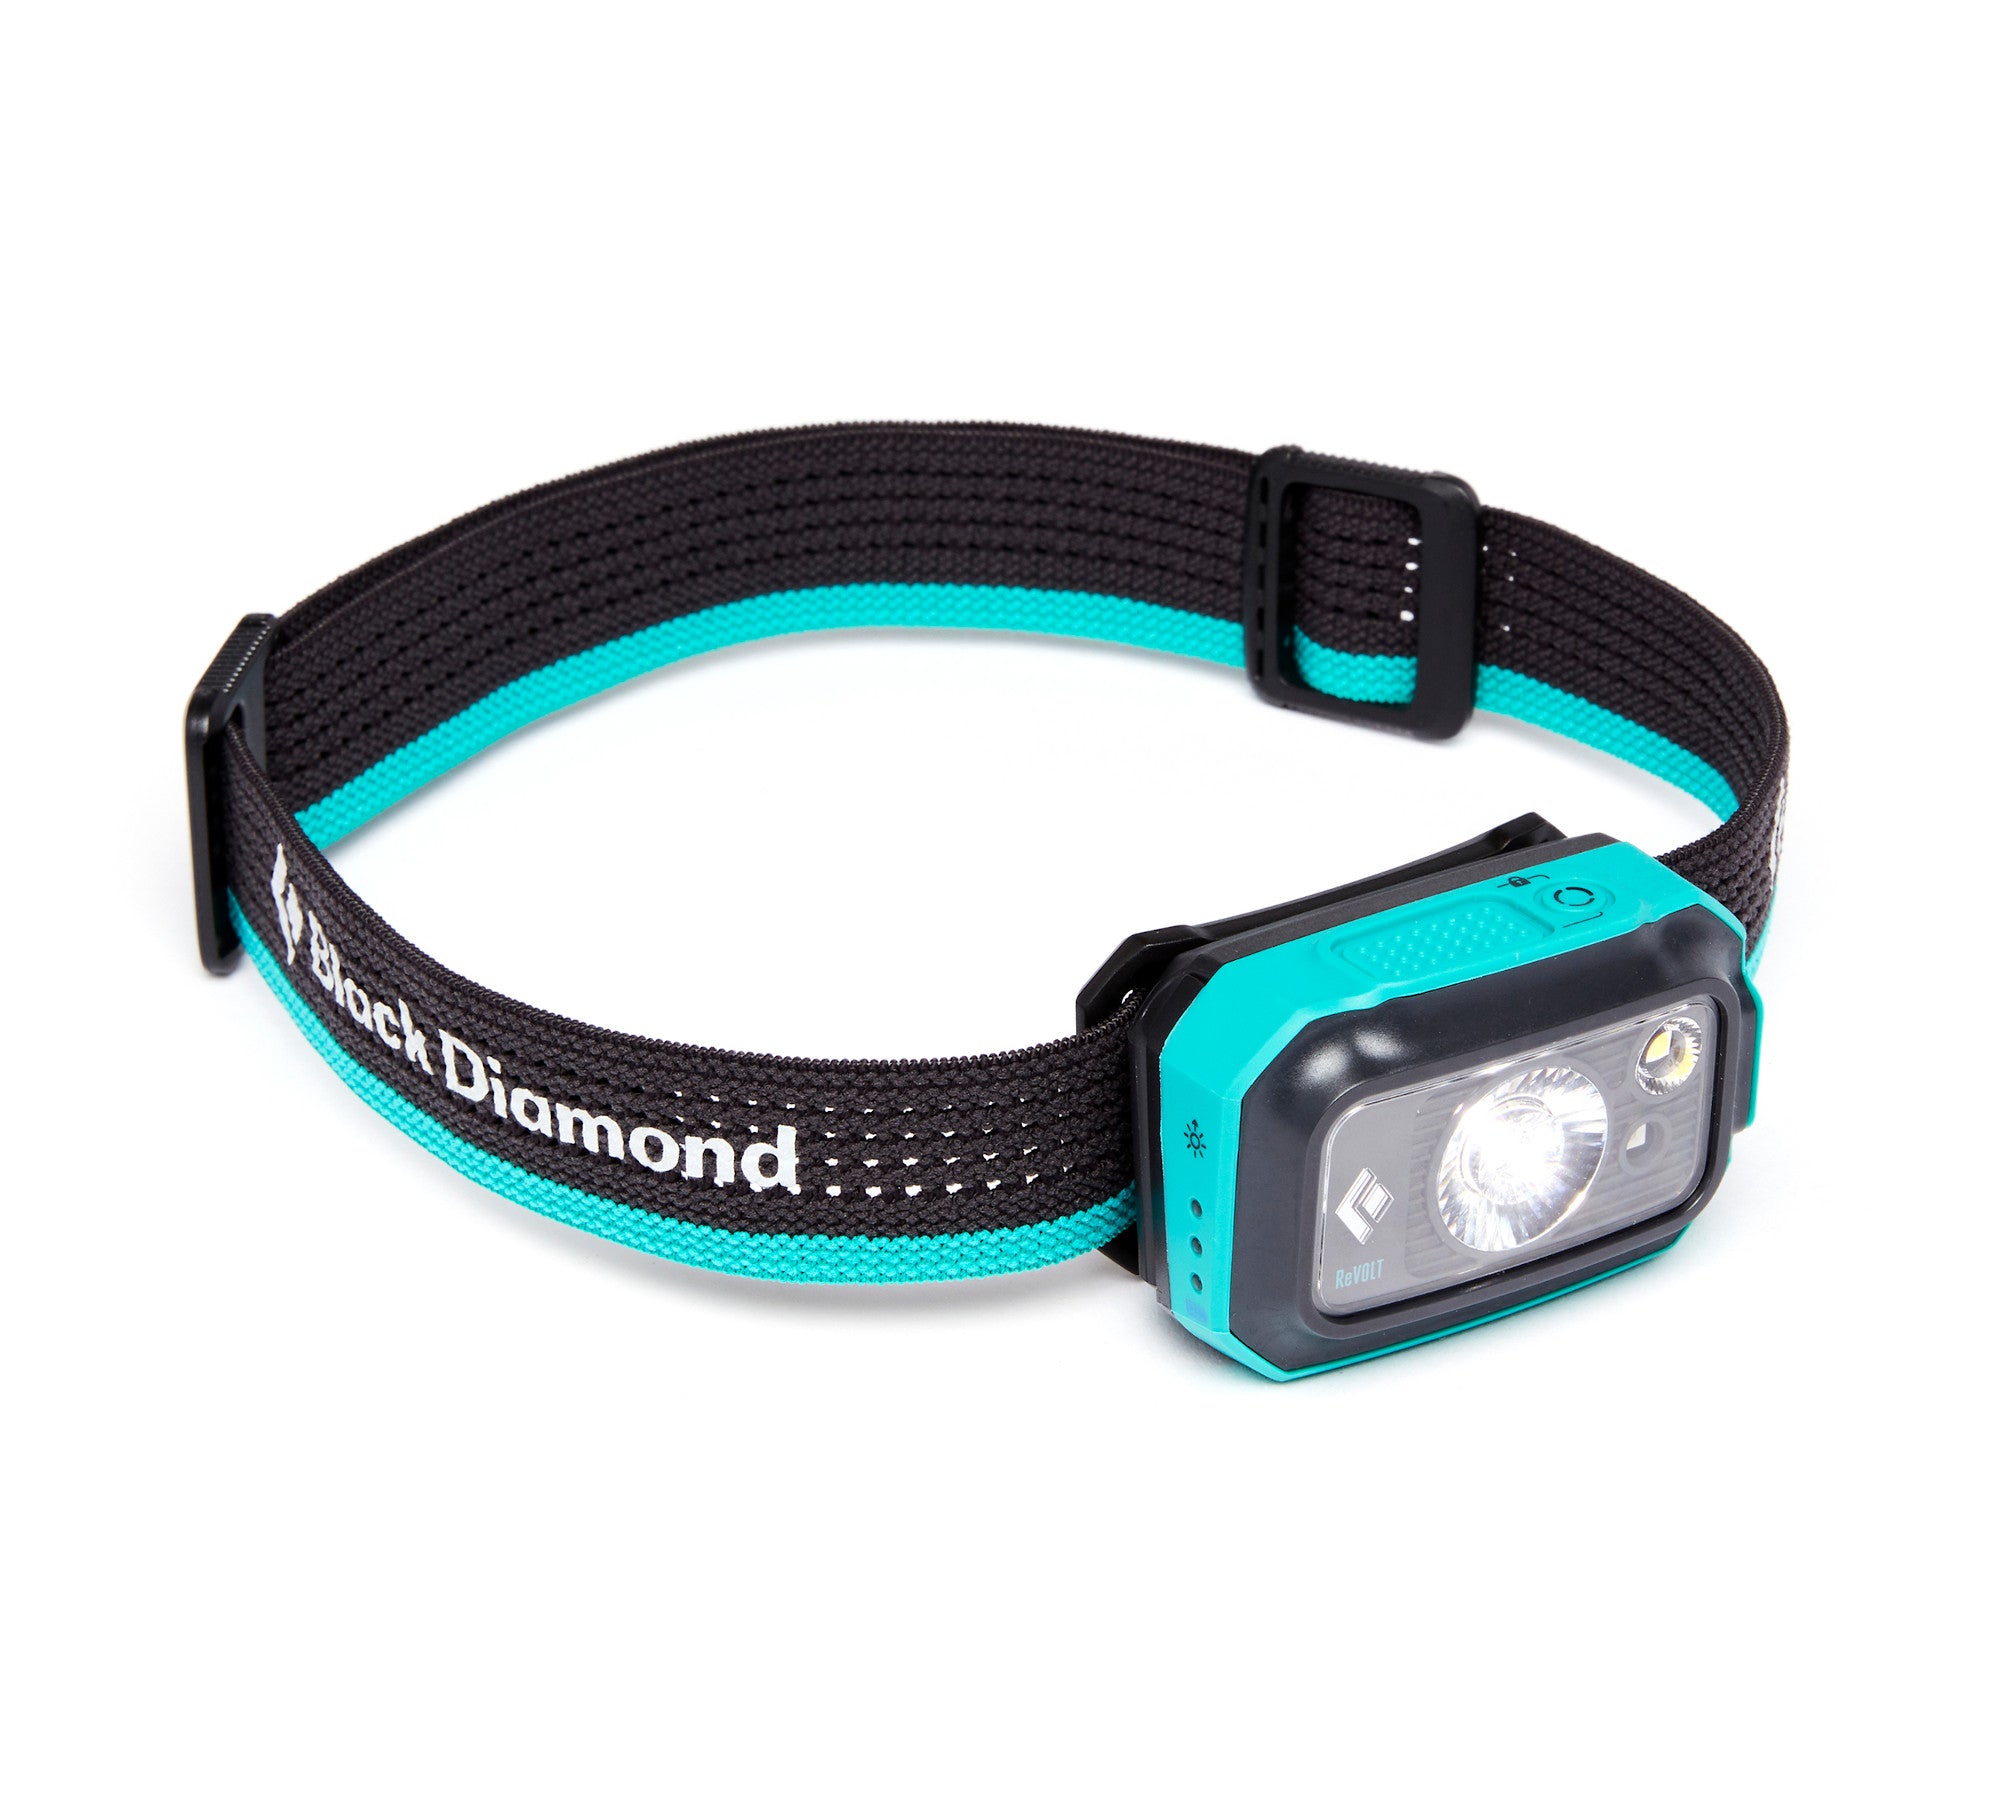 Black Diamond Revolt 350 Headlamp - Ascent Outdoors LLC